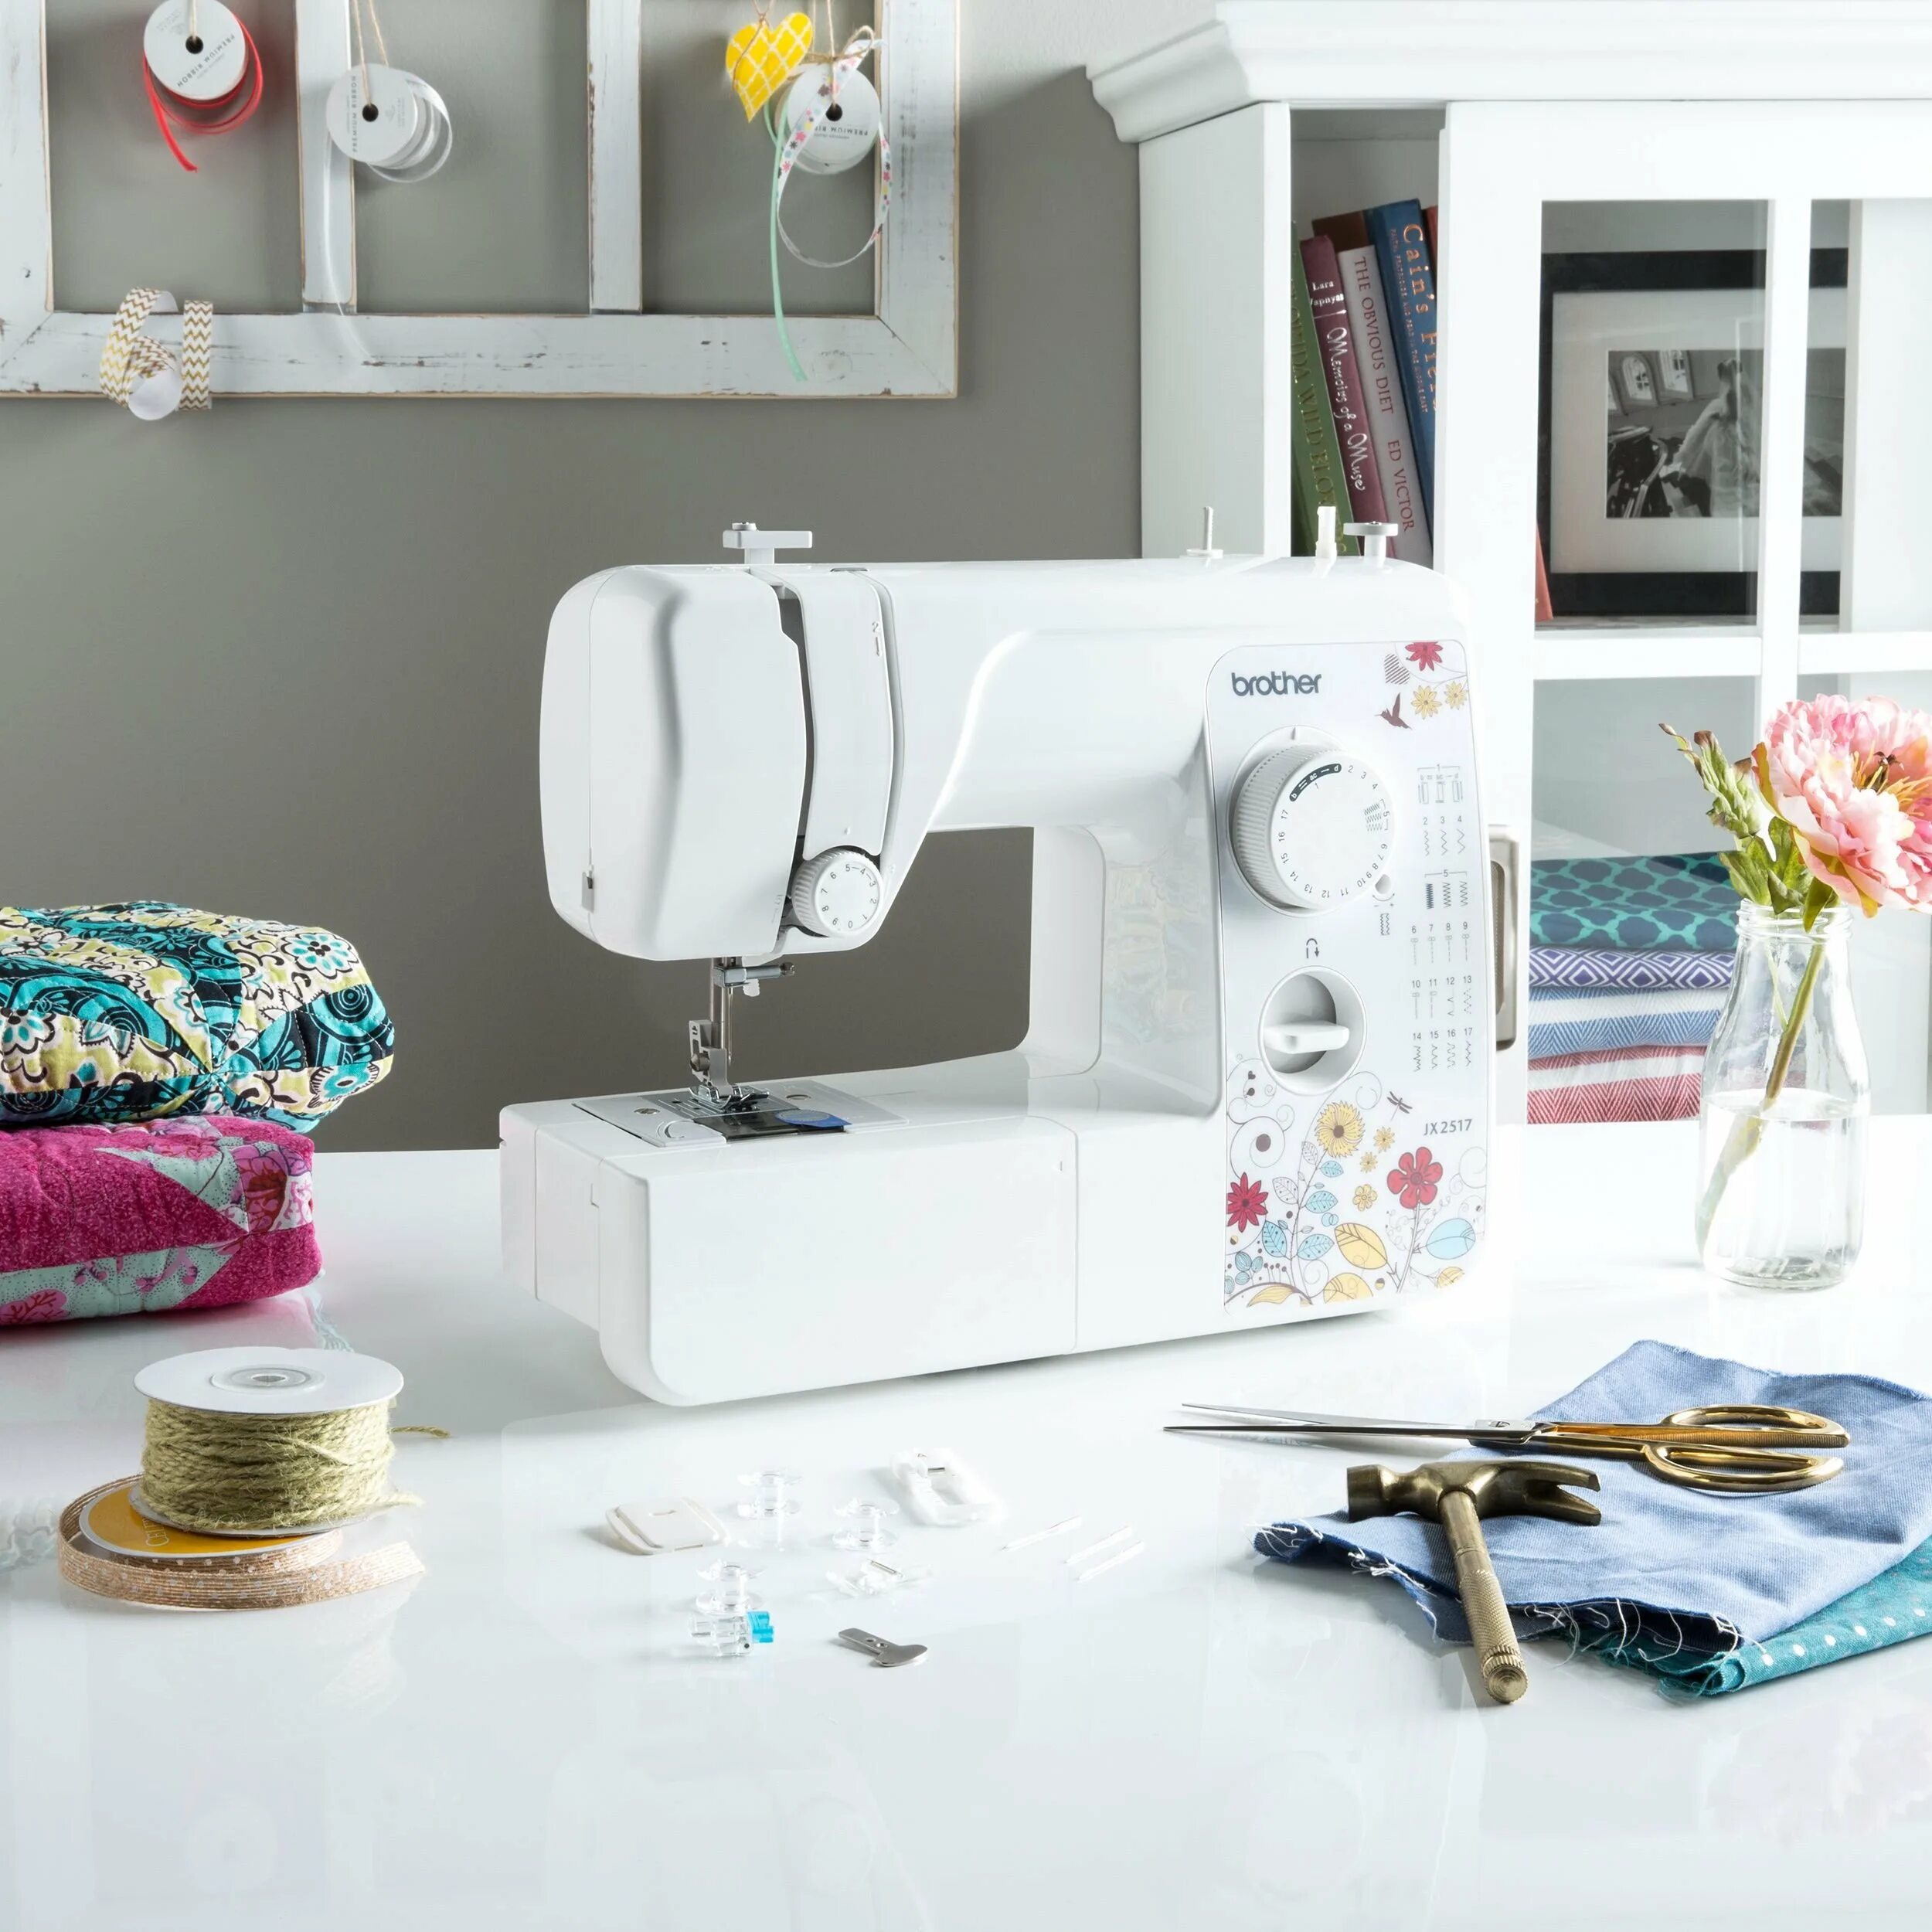 Выбор швейной машинки. Швейная машина Sew & Sew. Easy Stitch швейная машинка. Швейная машинка Фэмили. Швейная машина homestore hs893.